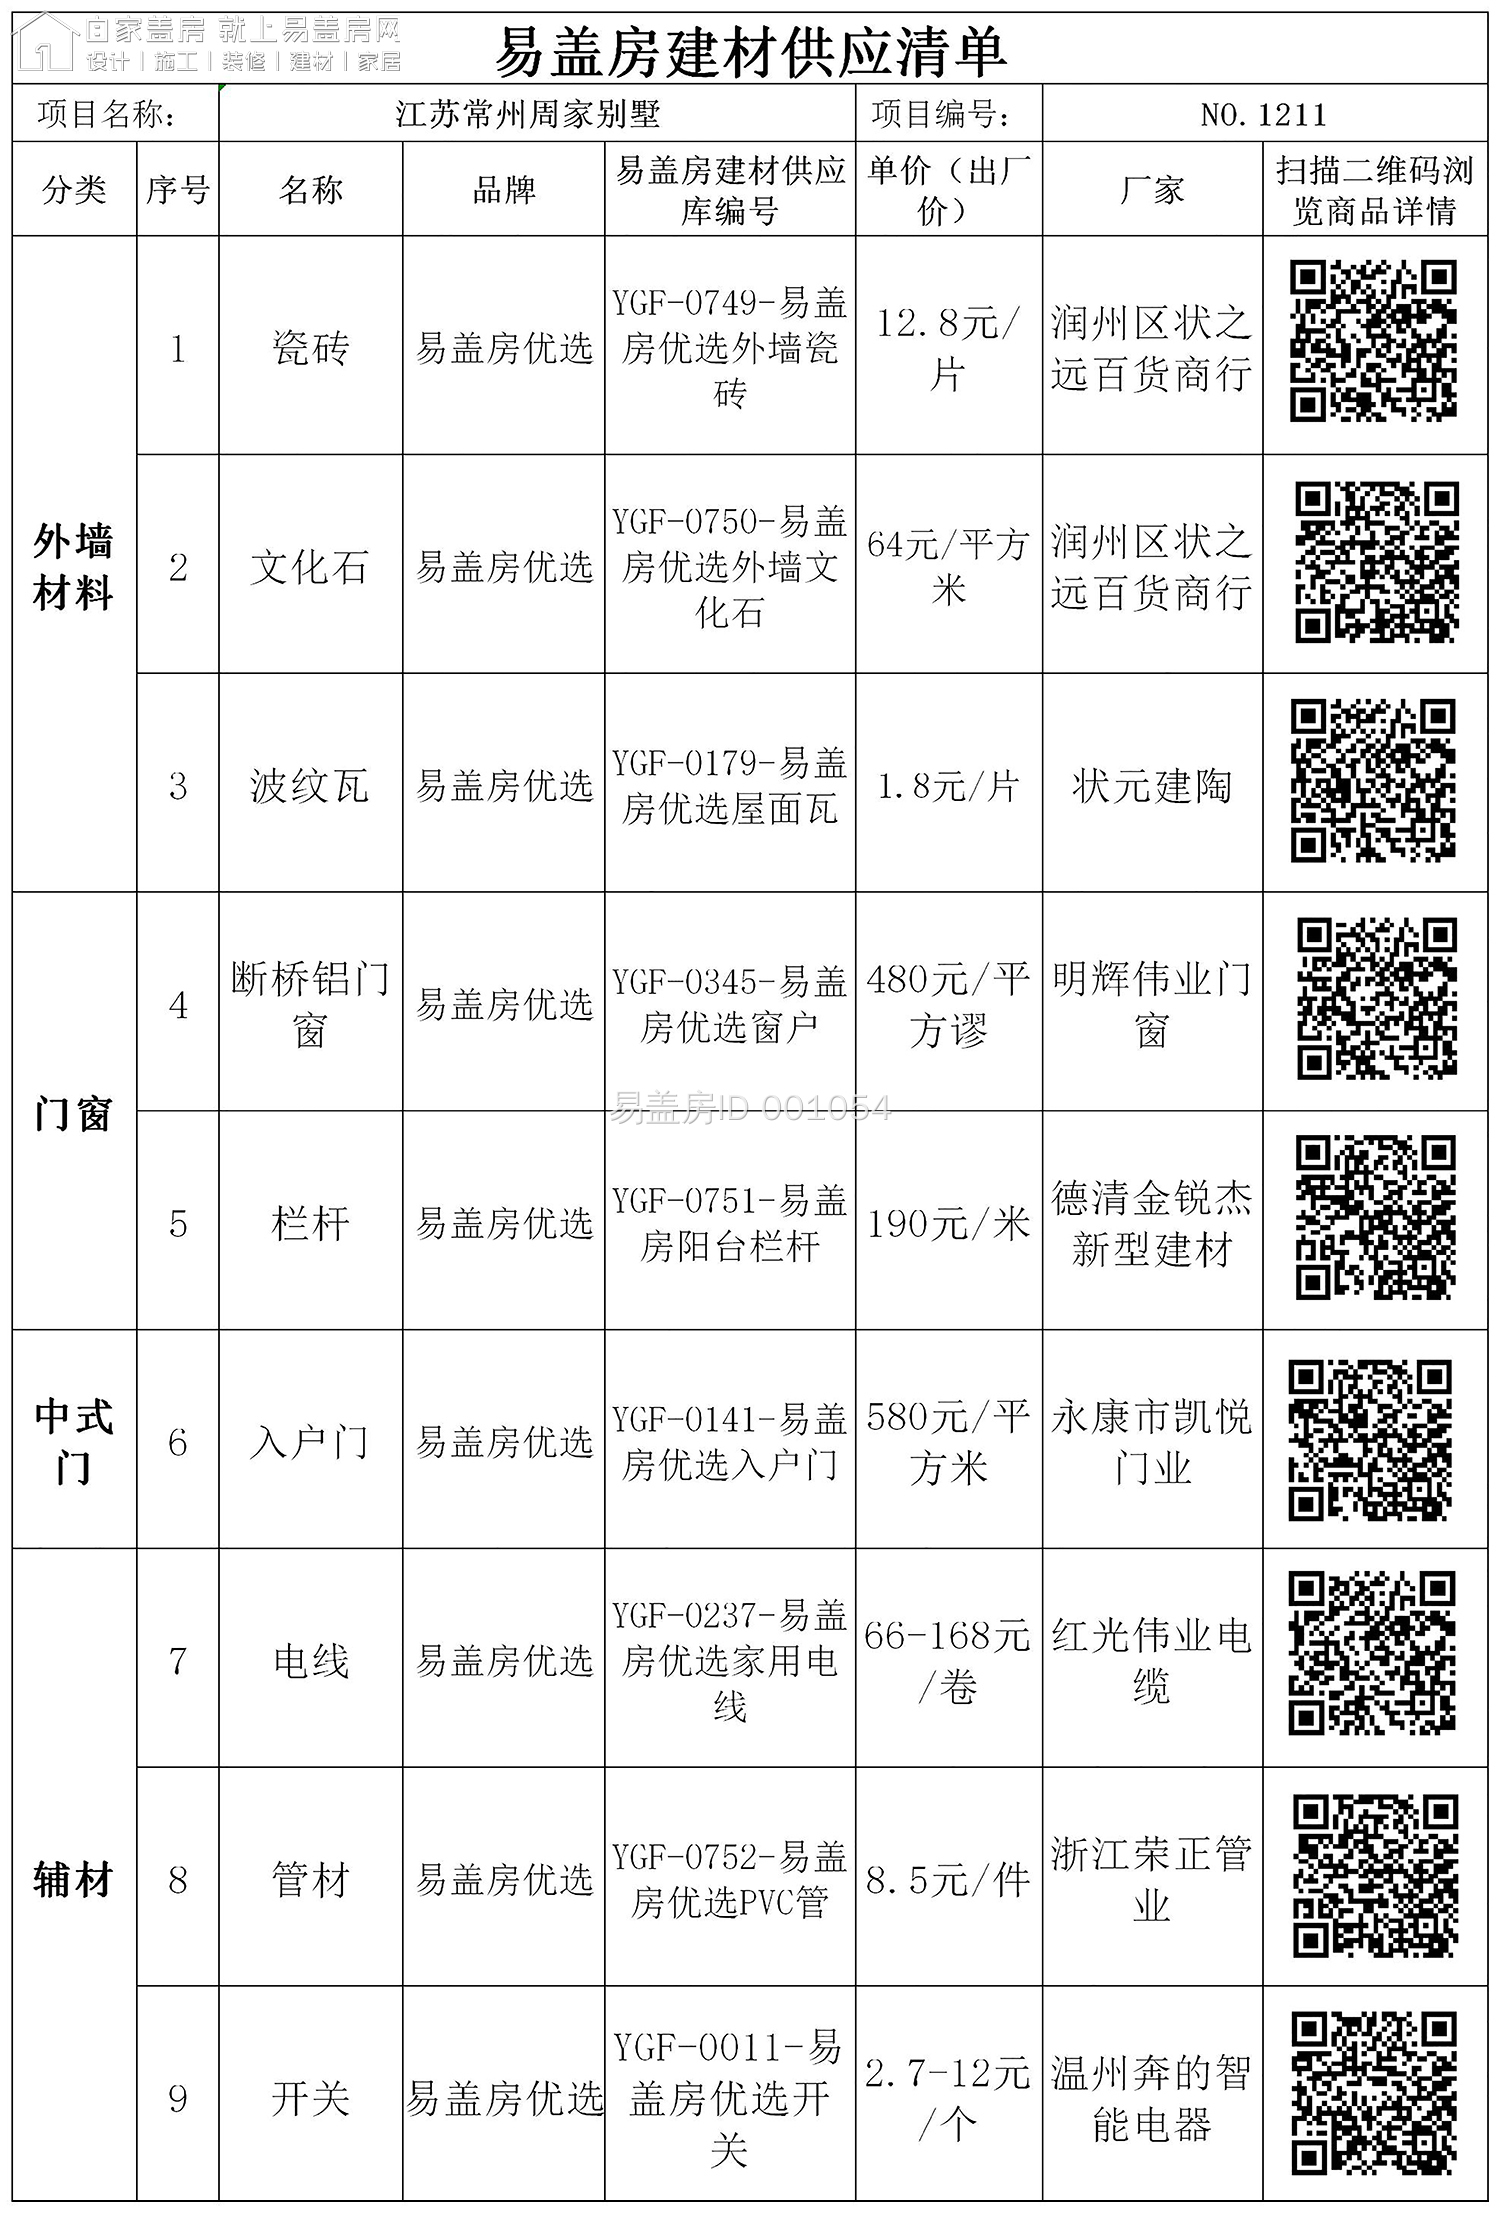 易盖房建材供应清单-江苏常州周瑜.xls123(1)(1).jpg